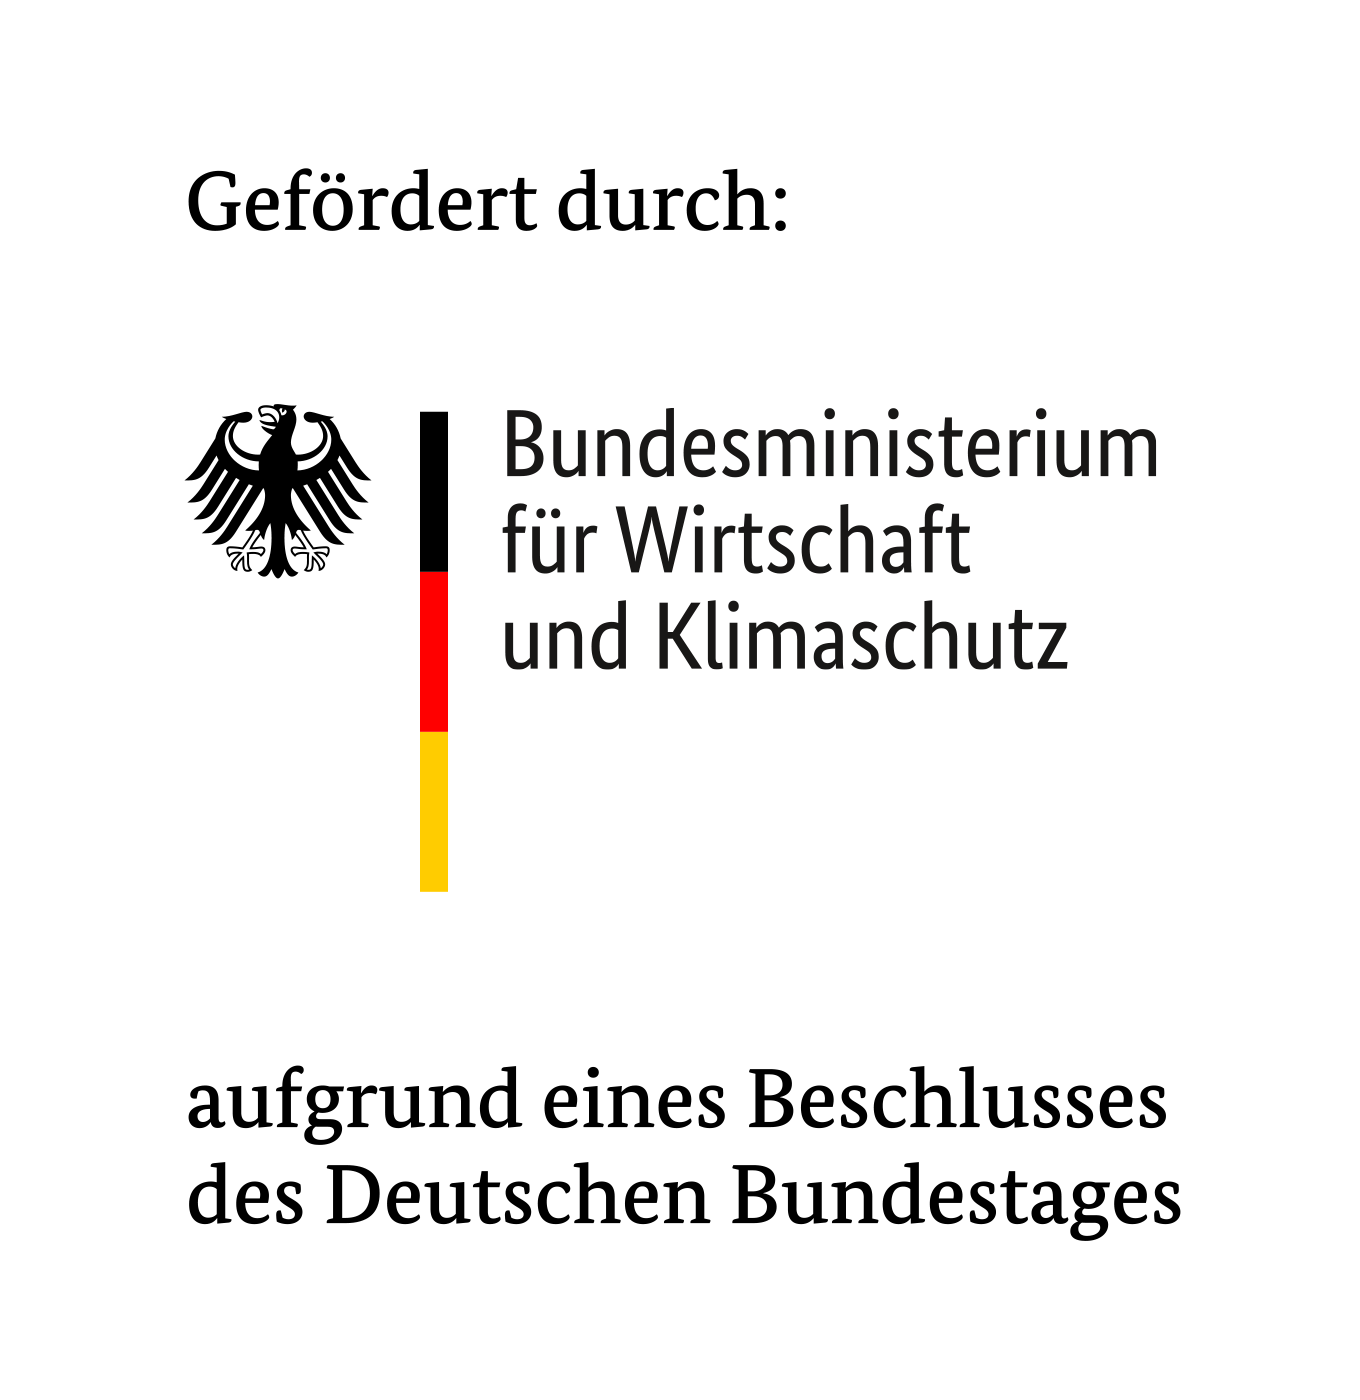 Logo: 
Gefördert durch Bundesministerium für Wirtschaft und Klimaschutz aufgrund eines Beschlusses des Deutschen Bundestages